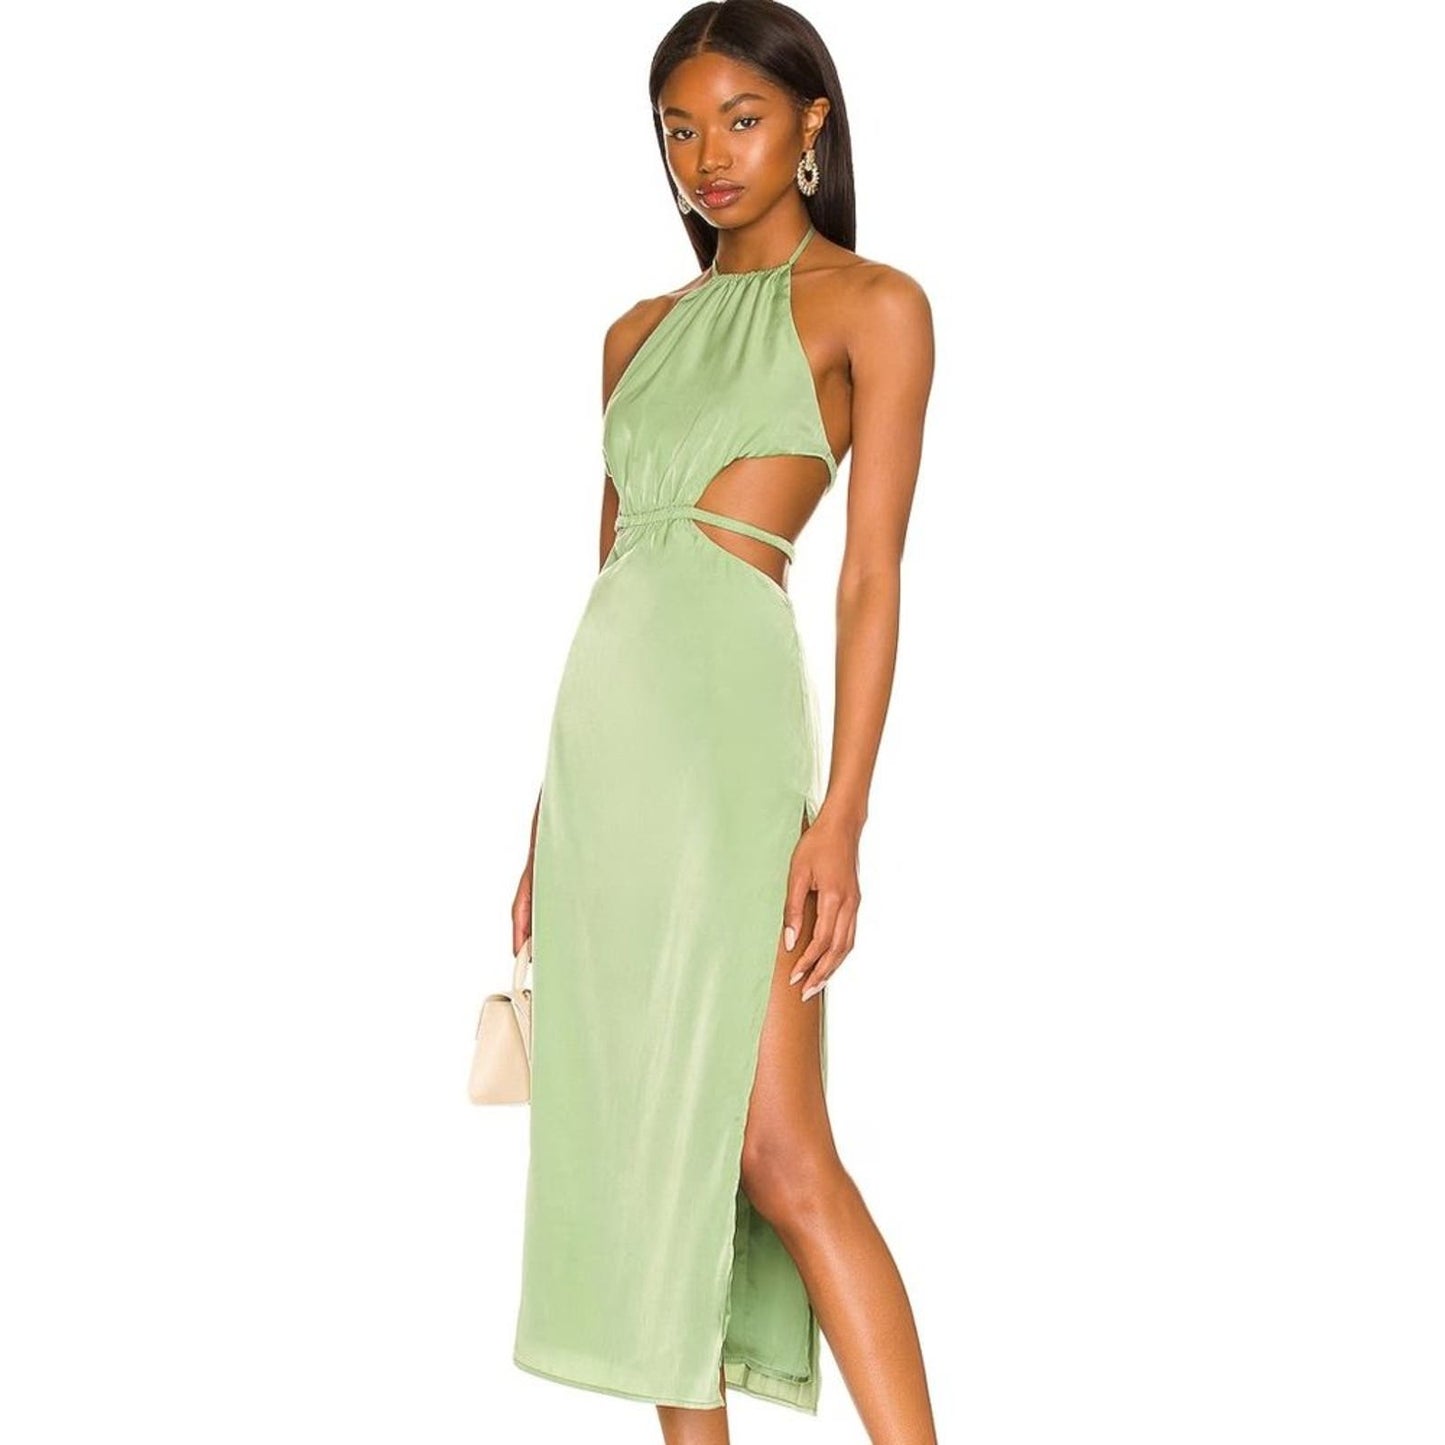 Camila Coelho Remi Midi Dress in Jade Green NWT Size Small